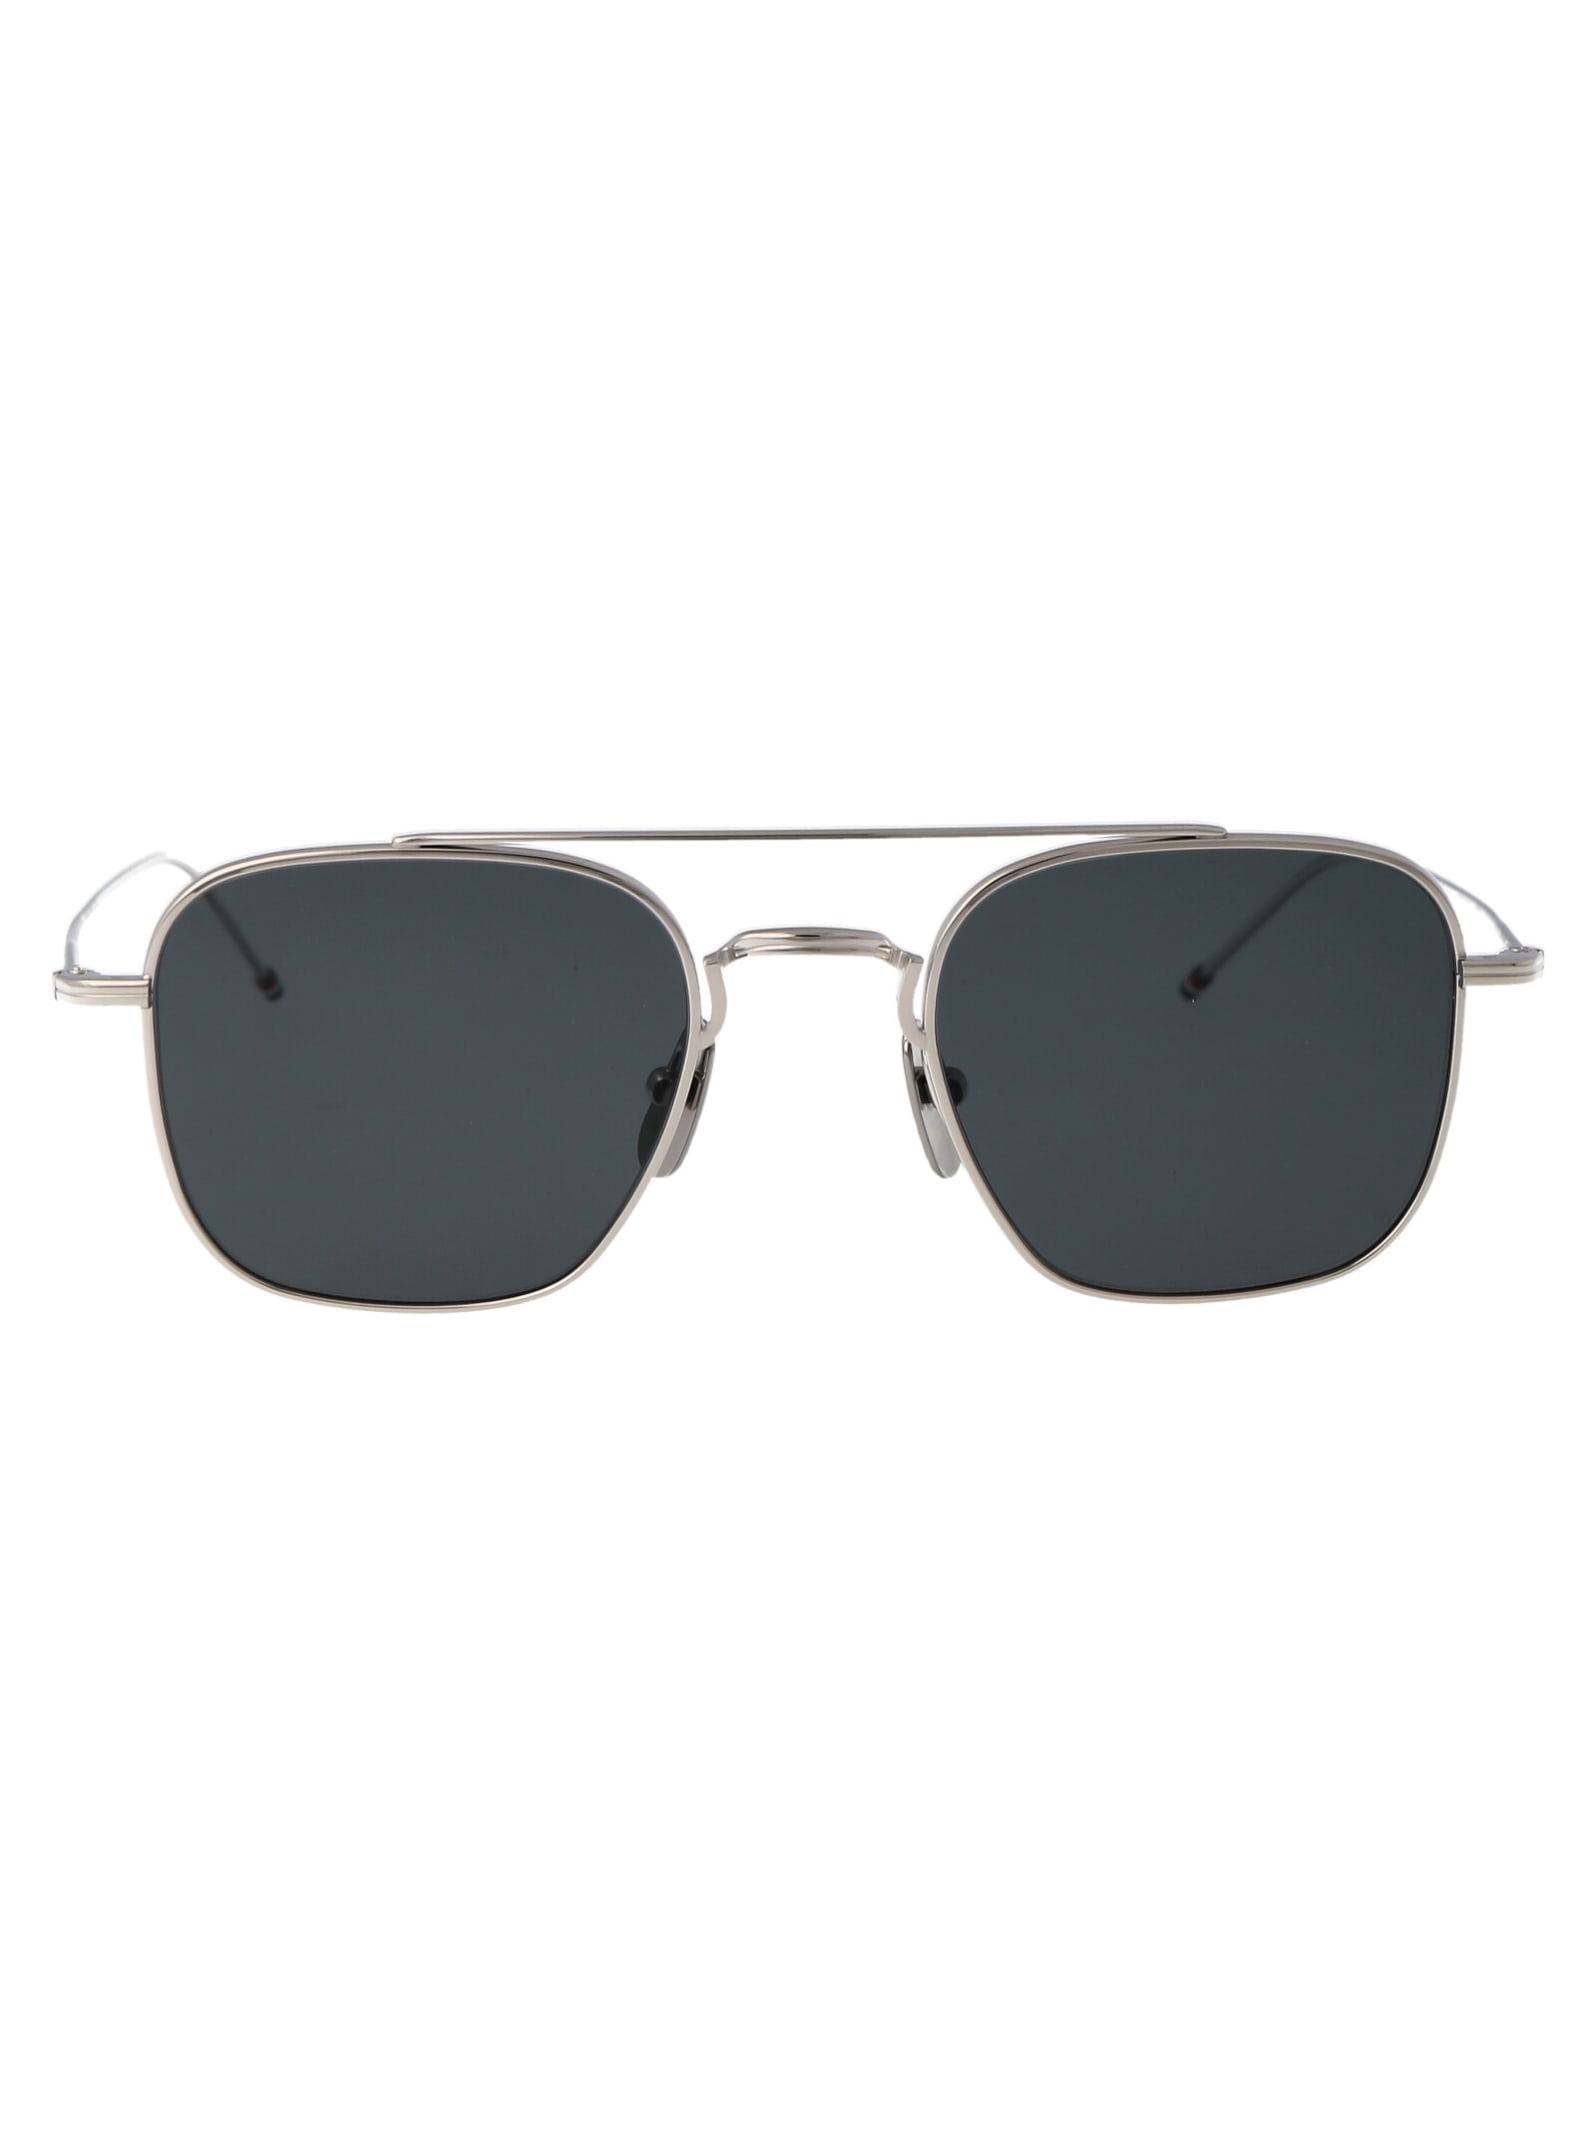 Ues907b-g0001-045-50 Sunglasses